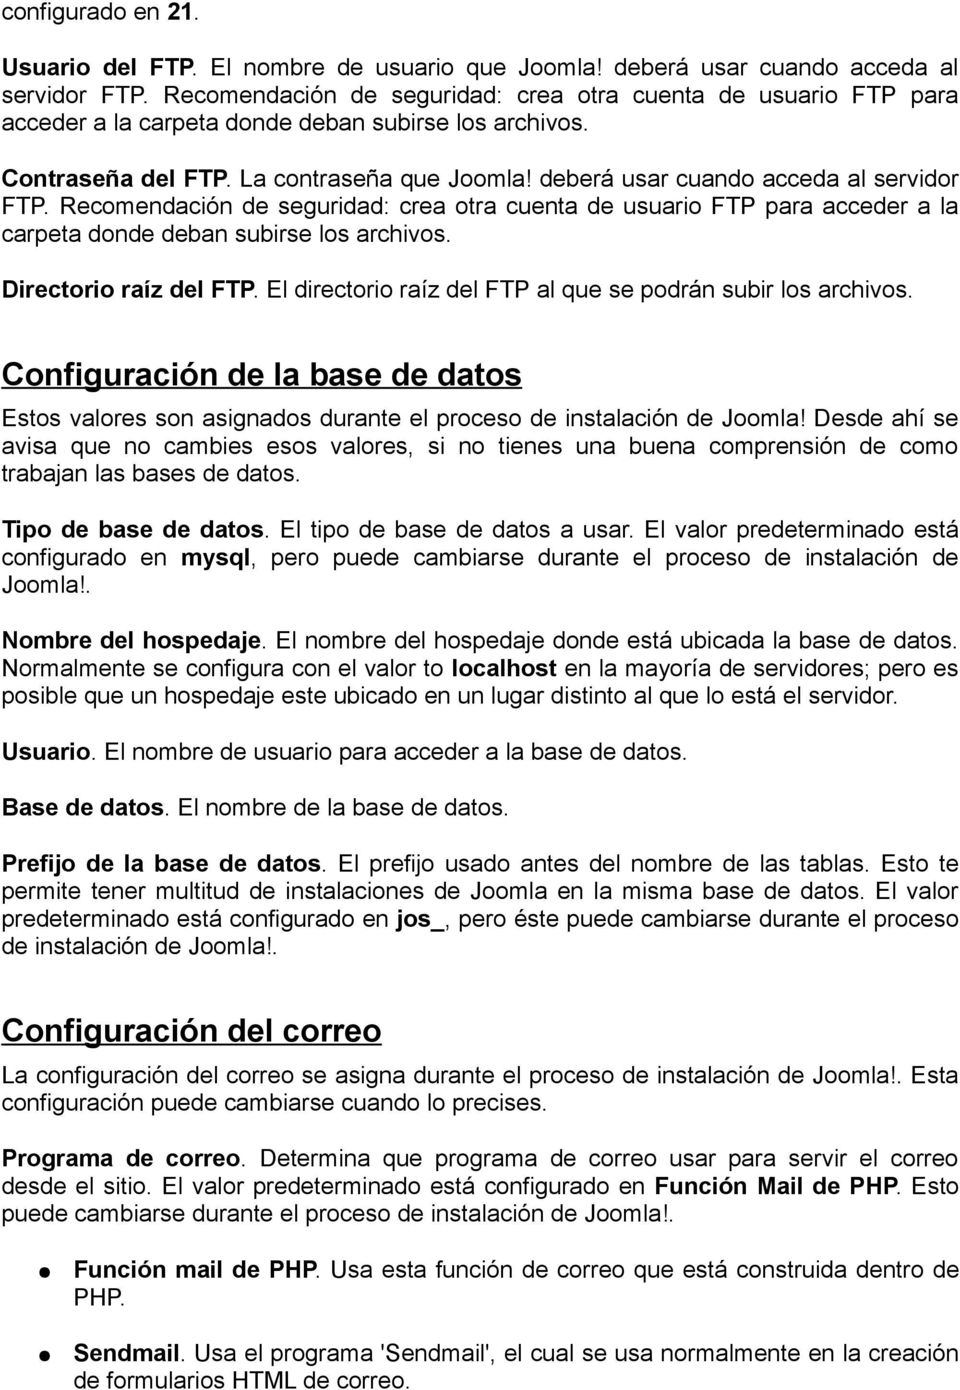 deberá usar cuando acceda al servidor FTP. Recomendación de seguridad: crea otra cuenta de usuario FTP para acceder a la carpeta donde deban subirse los archivos. Directorio raíz del FTP.